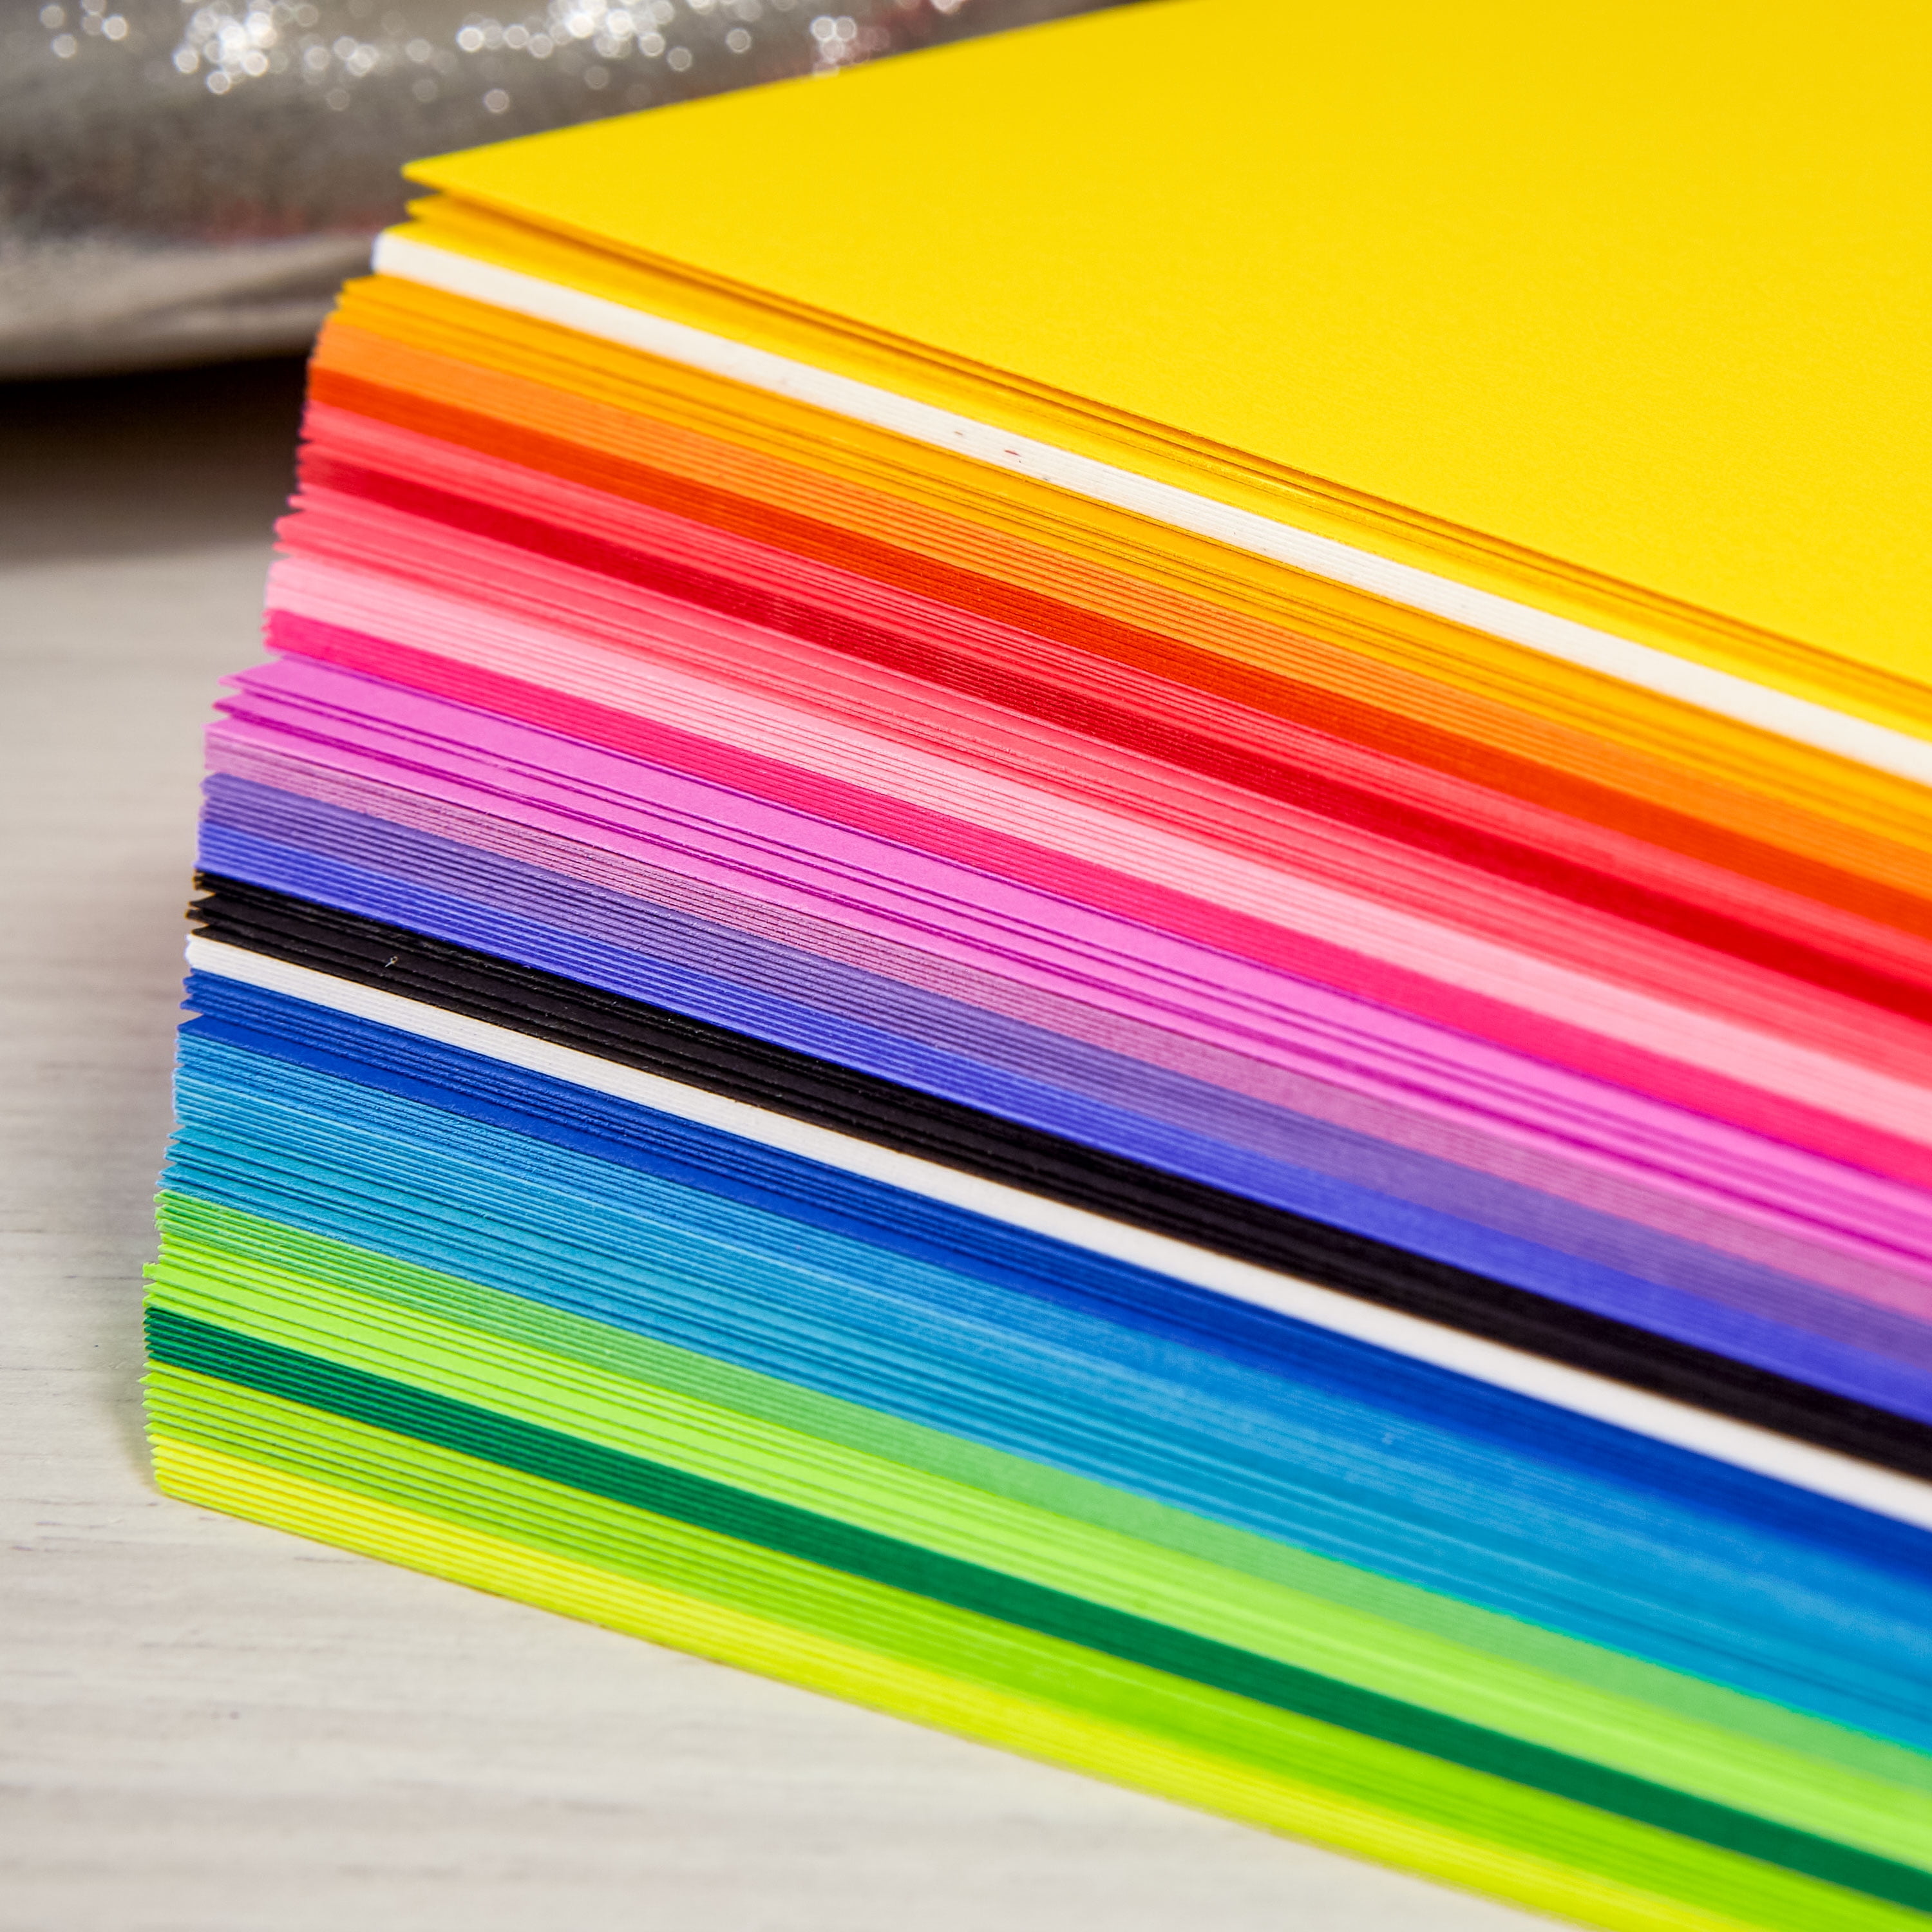 Astrobrights Colored Cardstock, 8.5” x 11”, 65 lb / 176 gsm, Spectrum –  mrsdsshop